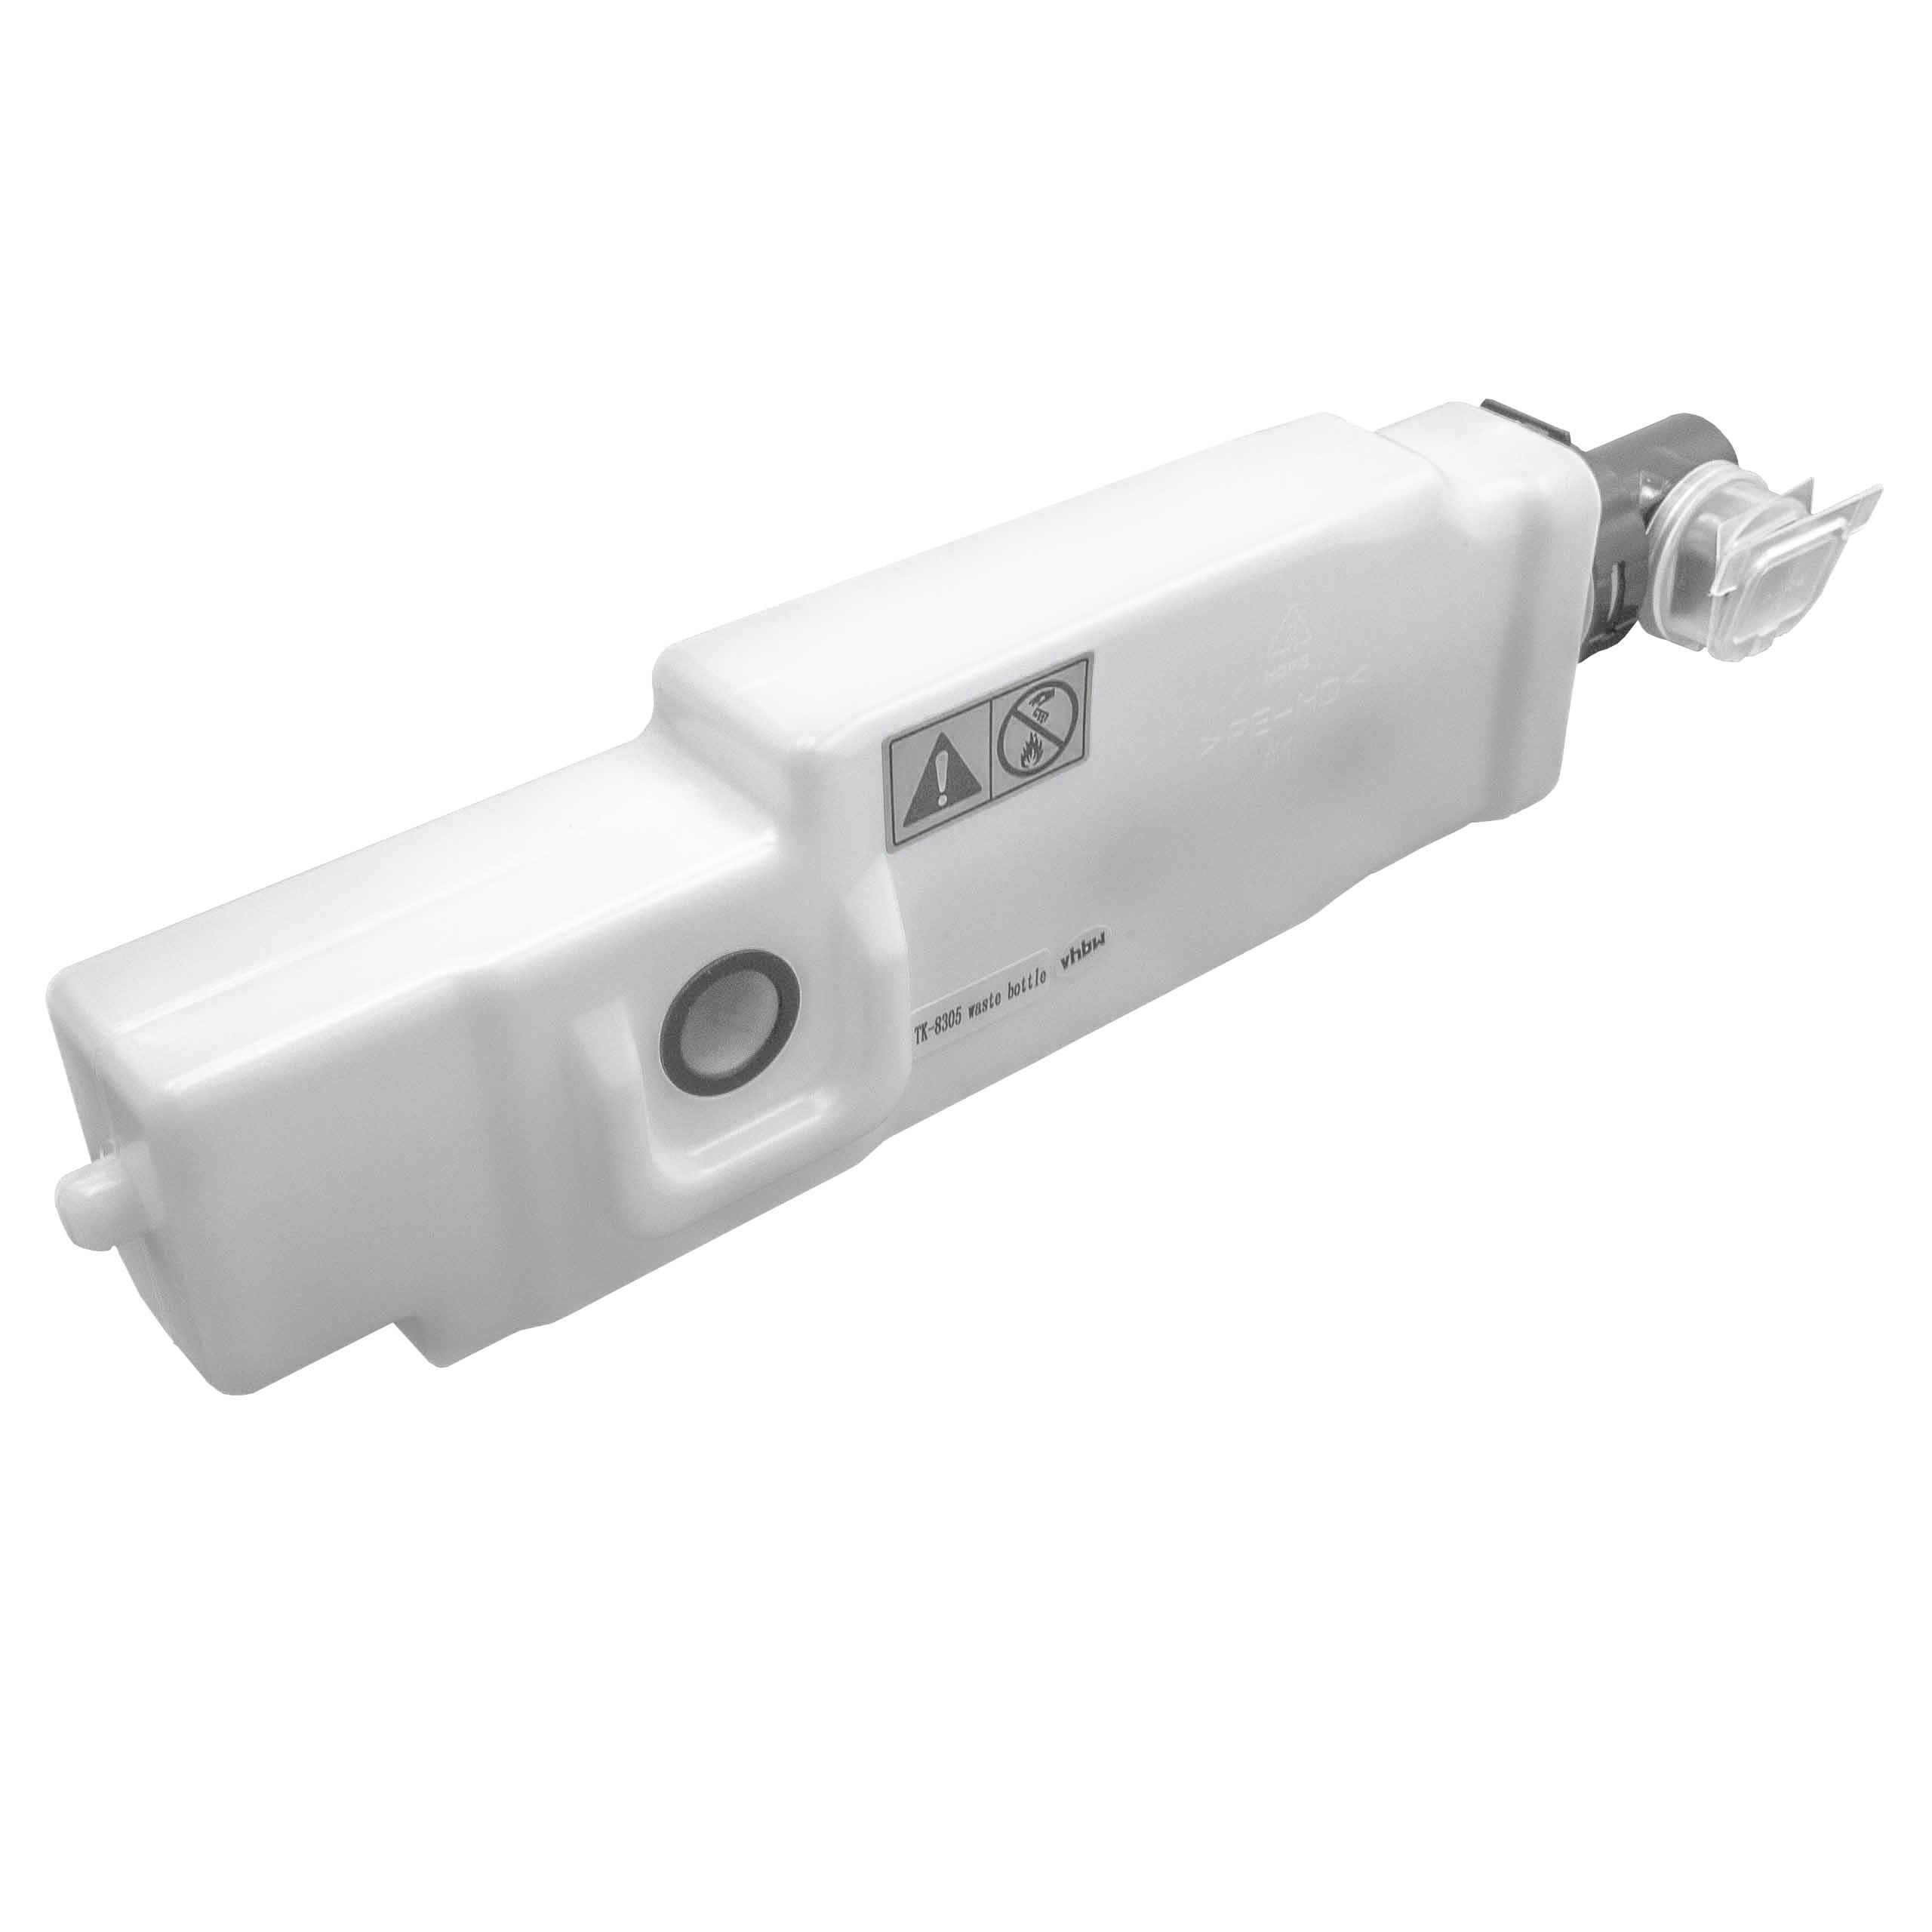 Collecteur de toner remplace Kyocera WT-895 pour imprimante laser Kyocera FS-C8020MFP - blanc